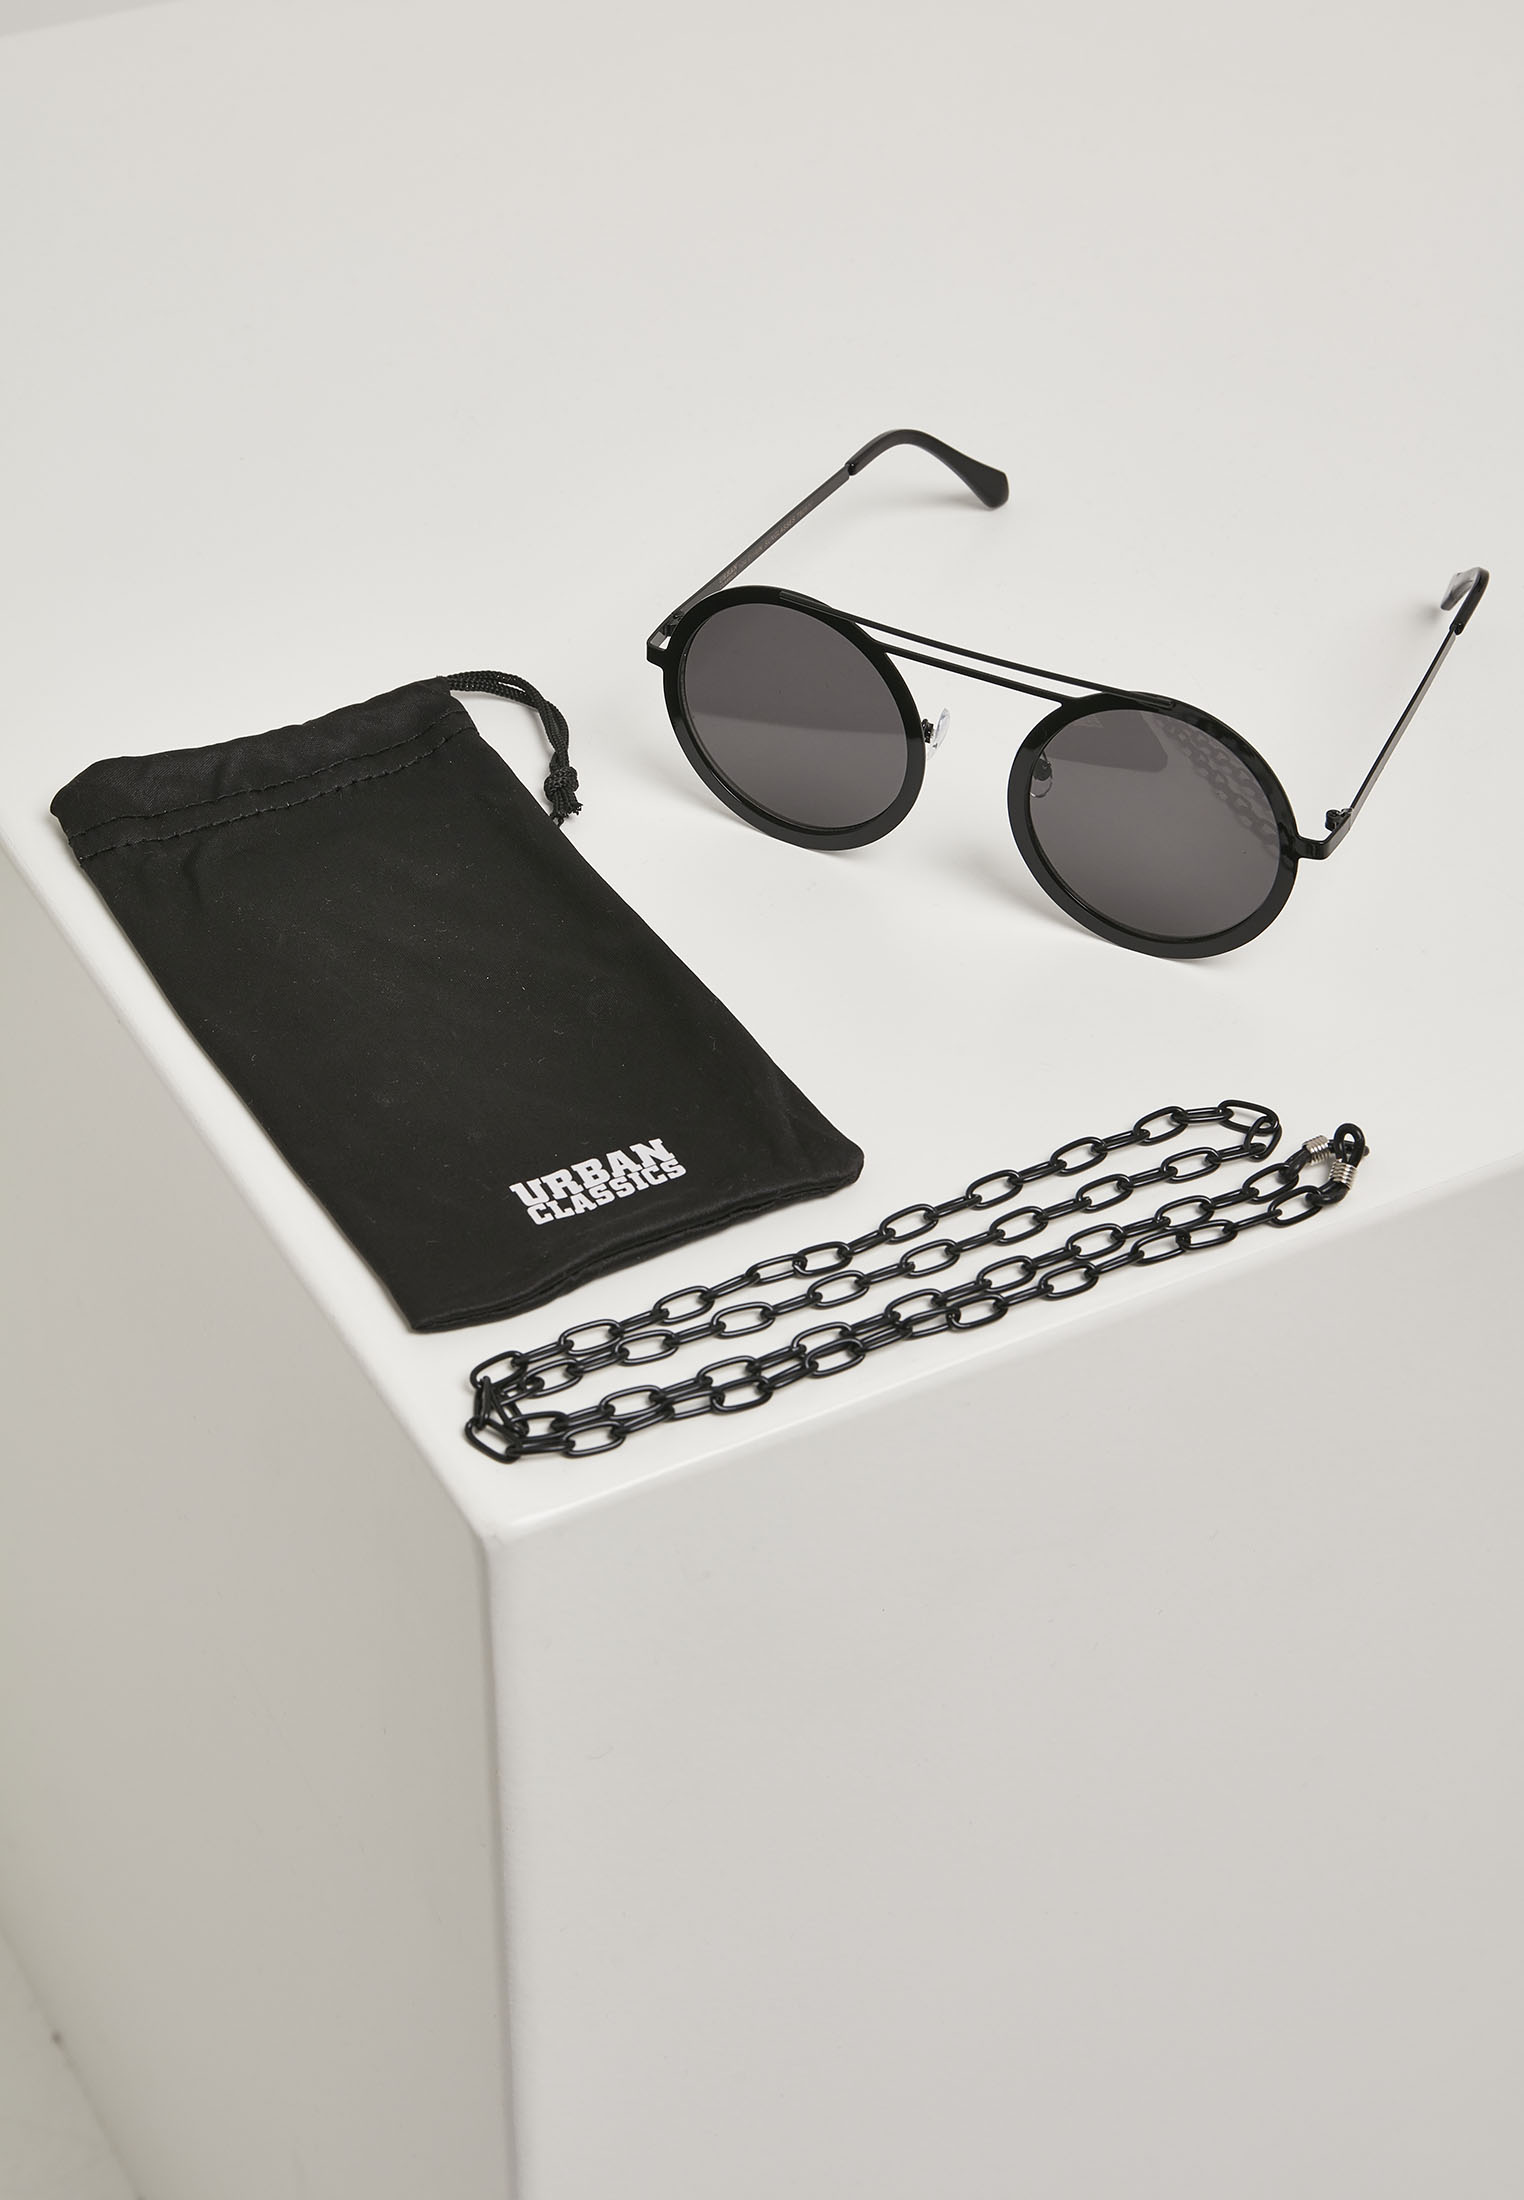 Sonnenbrillen 104 Chain Sunglasses in Farbe black/black